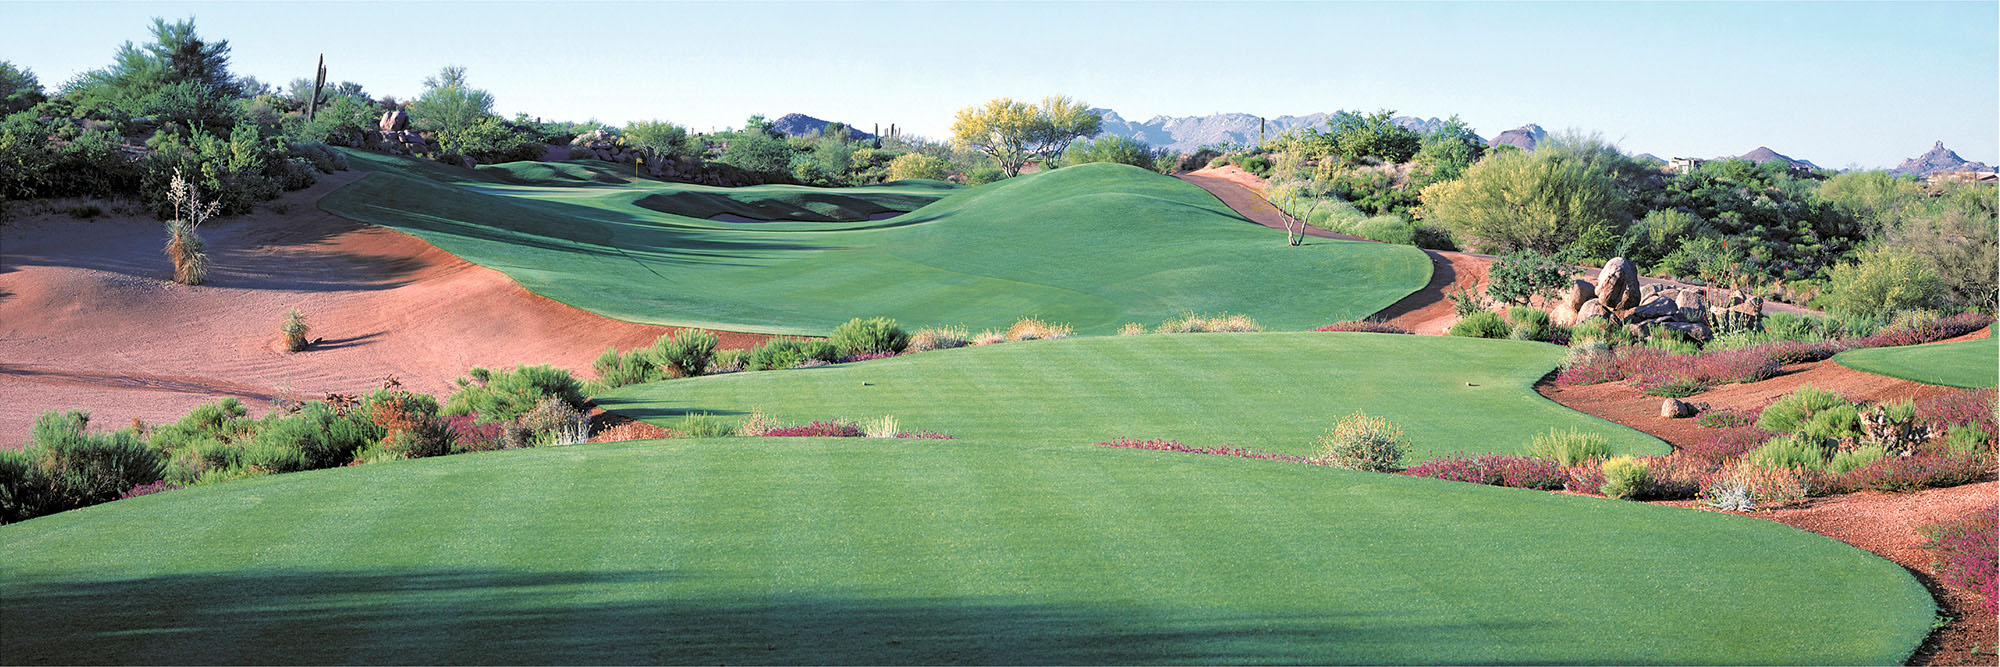 Golf Course Image - Desert Mountain Cochise No. 17